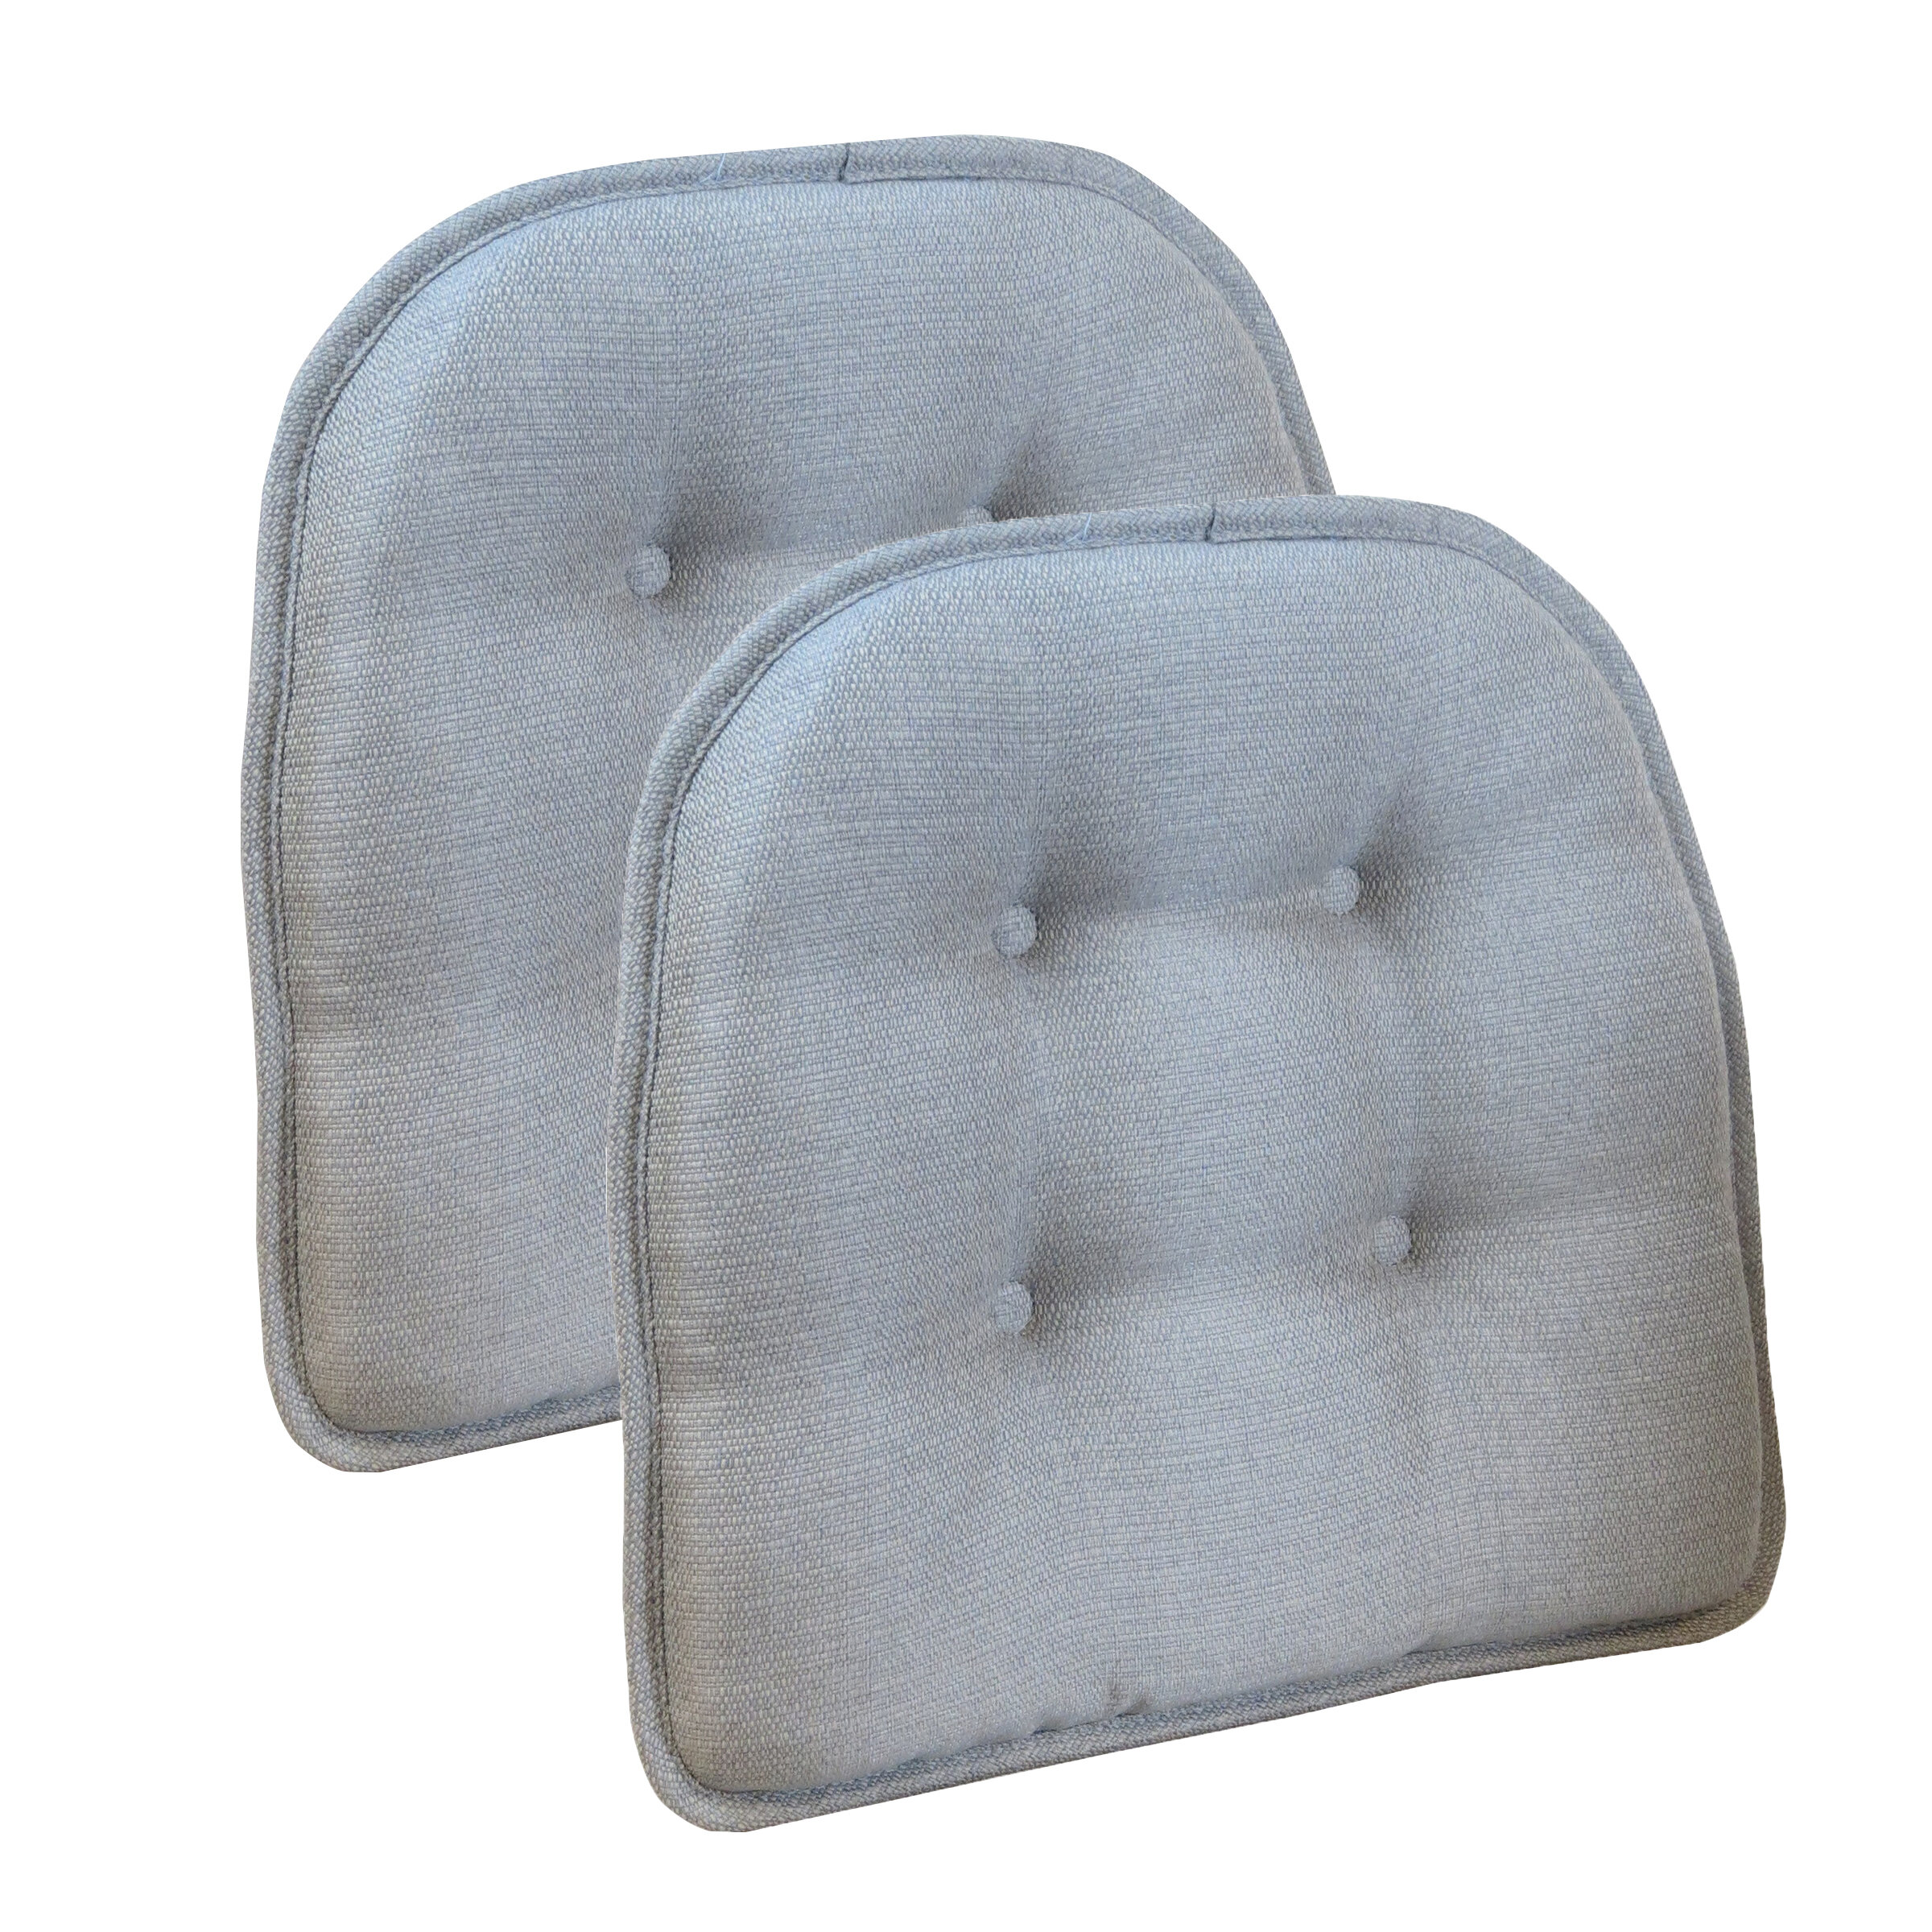 wayfair basics tufted gripper chair seat cushion